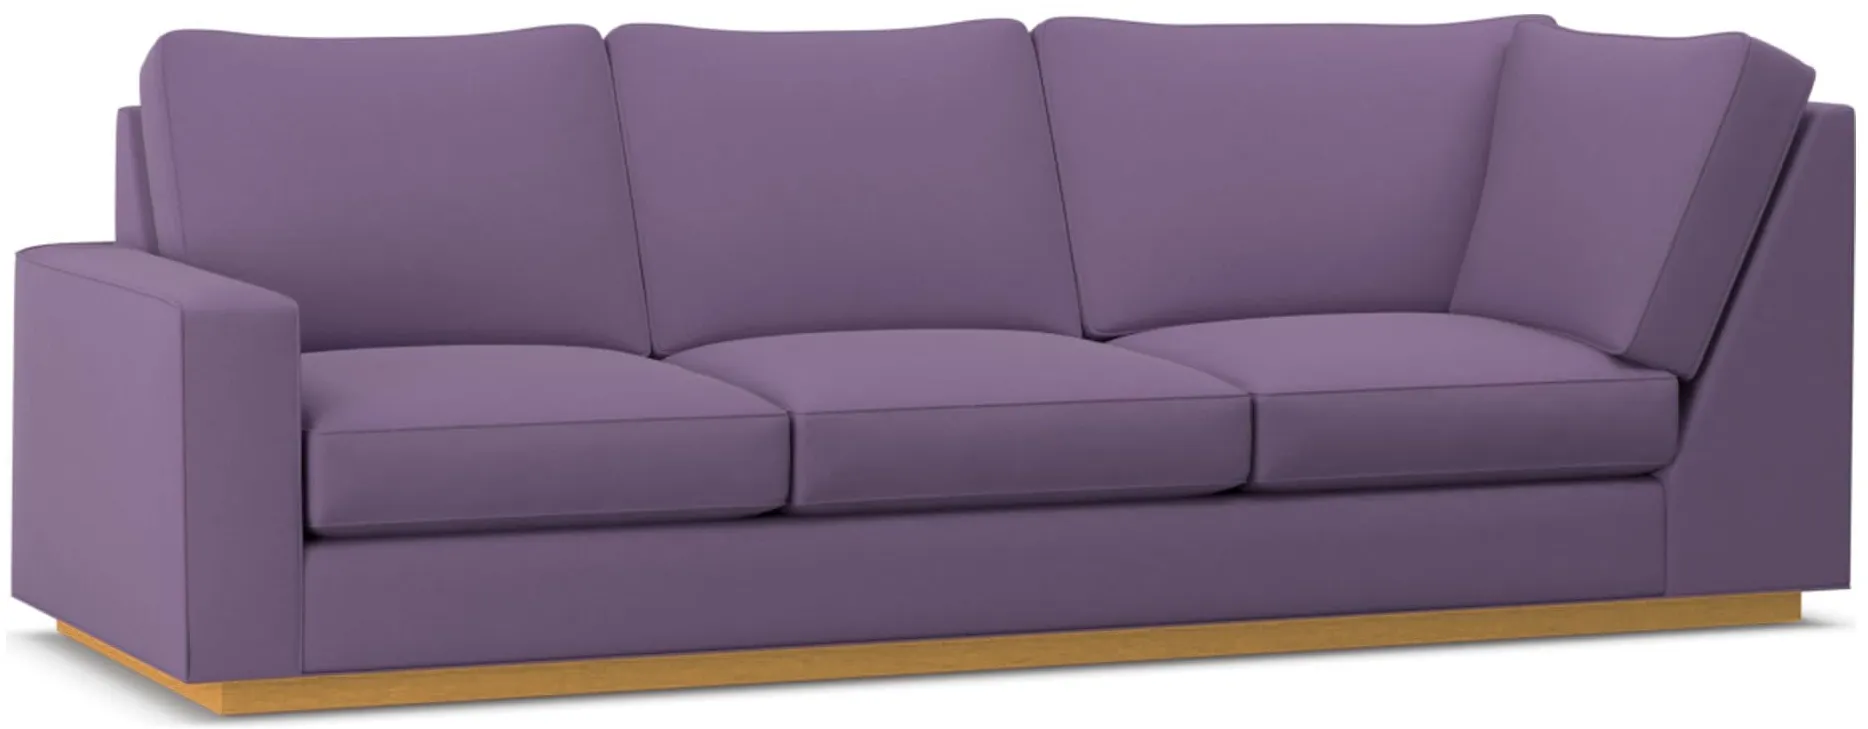 Harper Left Arm Corner Sofa